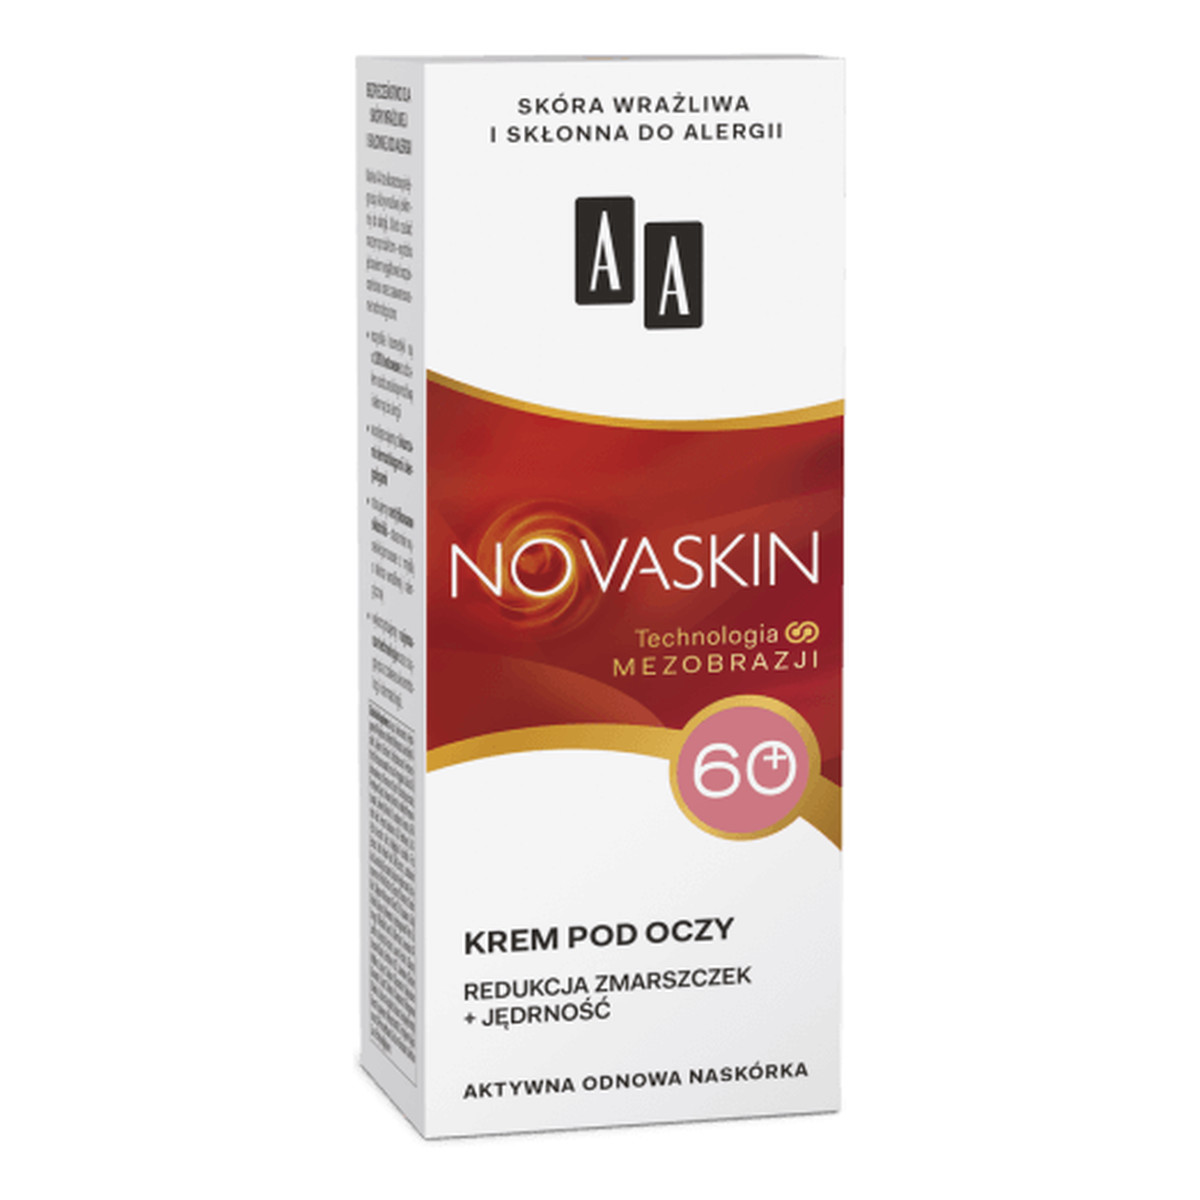 AA Novaskin 60+, Krem pod oczy - redukcja zmarszczek + jędrność, cera dojrzała 15ml